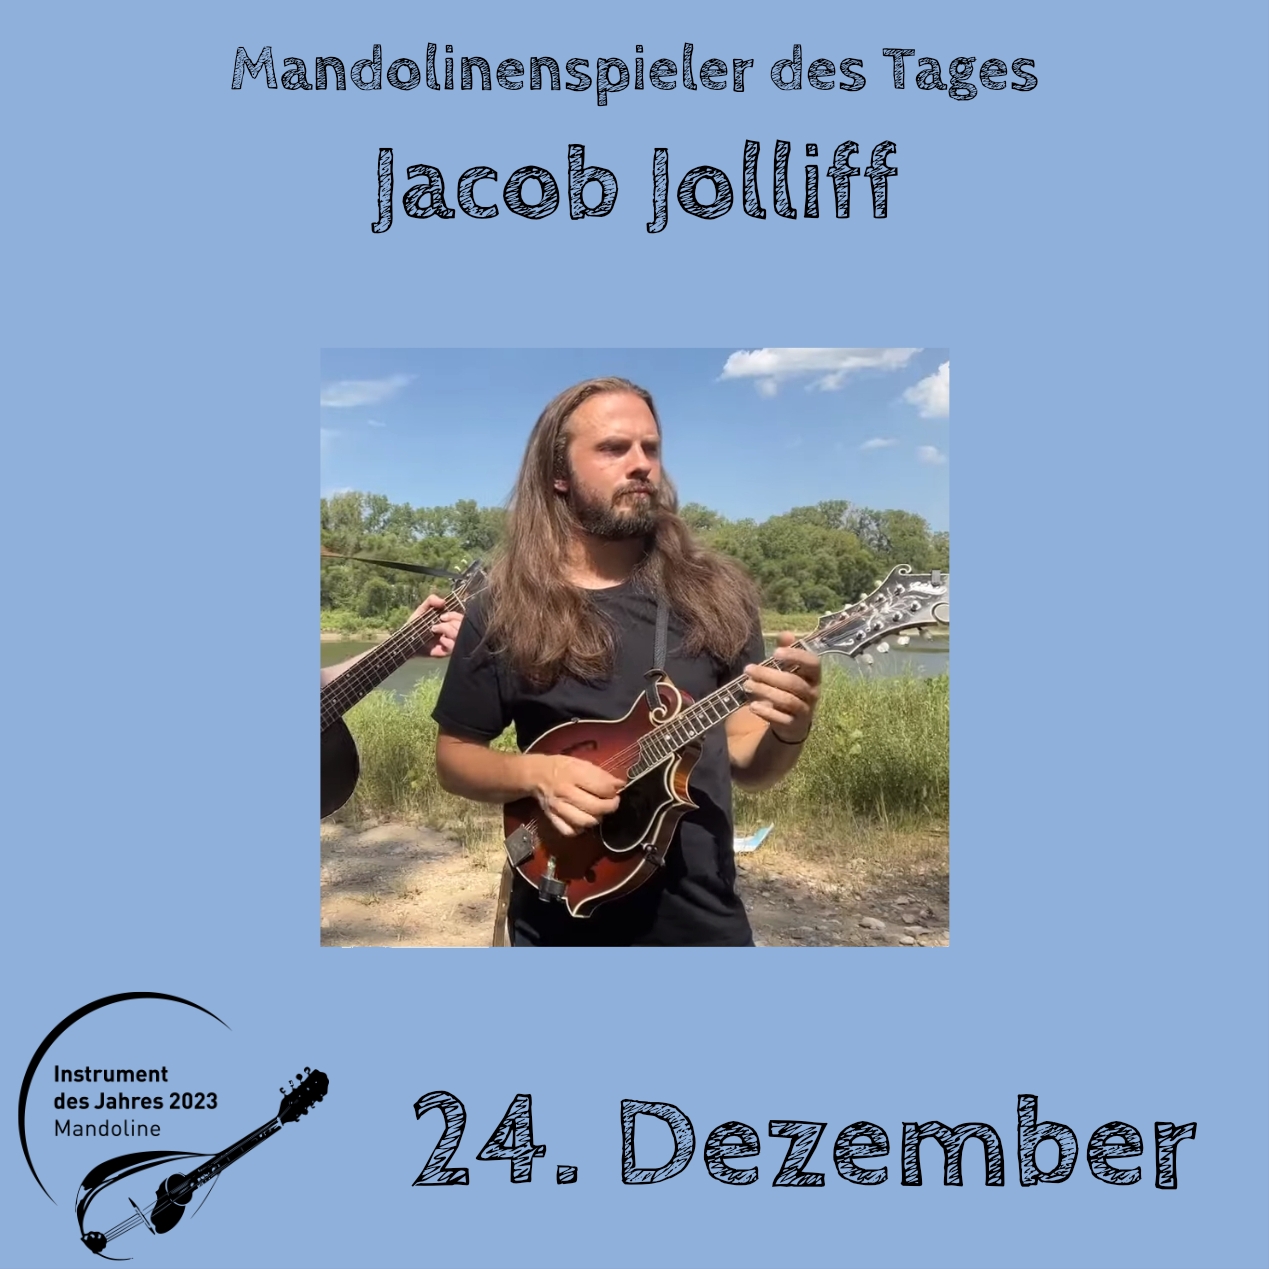 24. Dezember - Jacob Jolliff Instrument des Jahres 2023 Mandolinenspieler Mandolinenspielerin des Tages